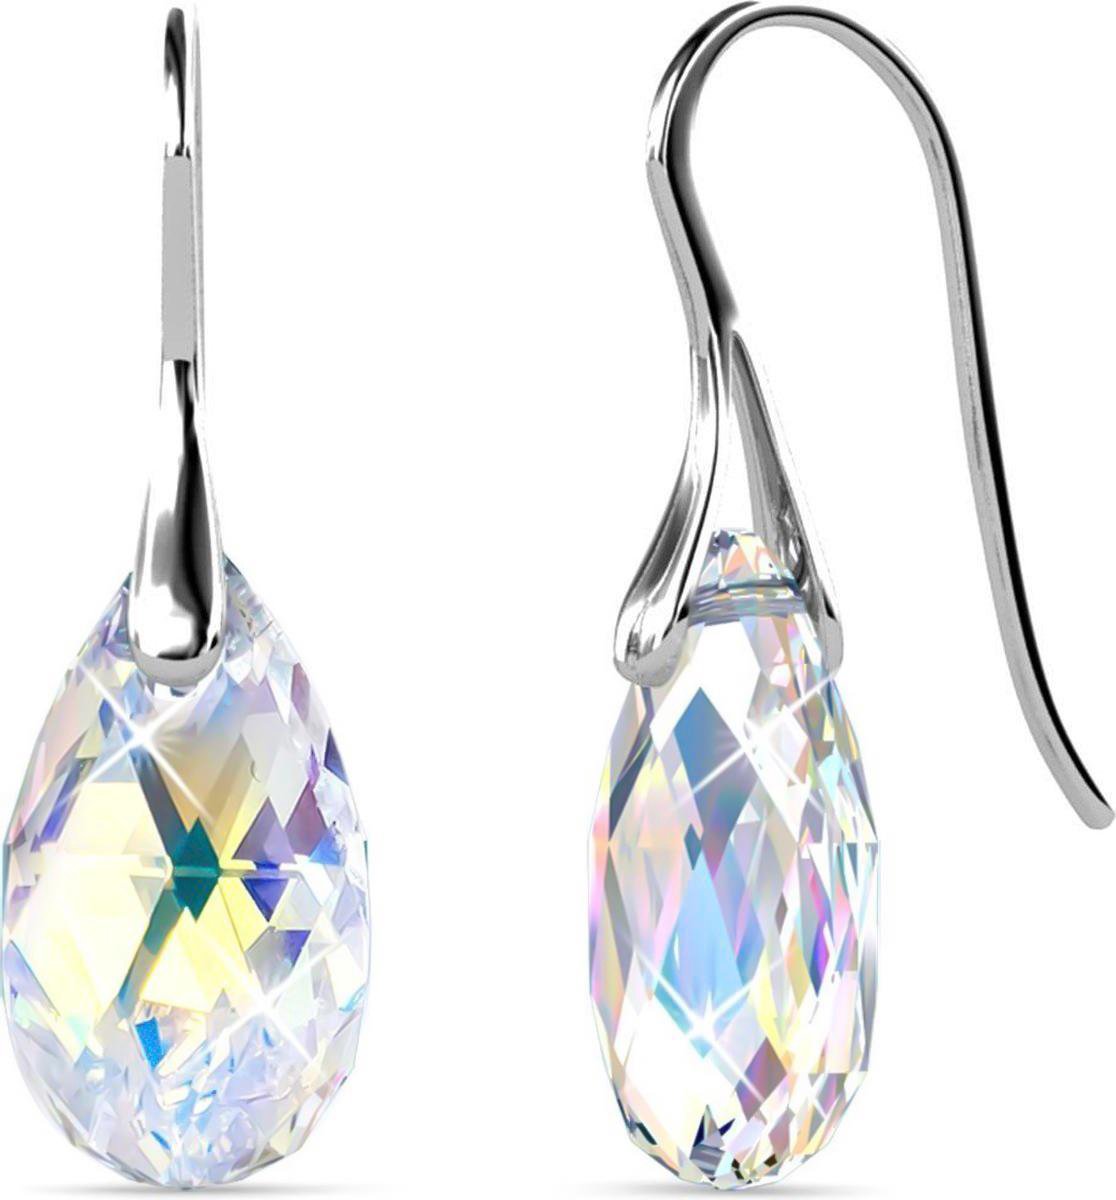 Shoplace Oorbellen dames met Swarovski kristallen - Druppel - 18K Witgoud verguld - Oorhangers - Swarovski oorbellen - Cadeauverpakking - Valentijn cadeautje voor haar